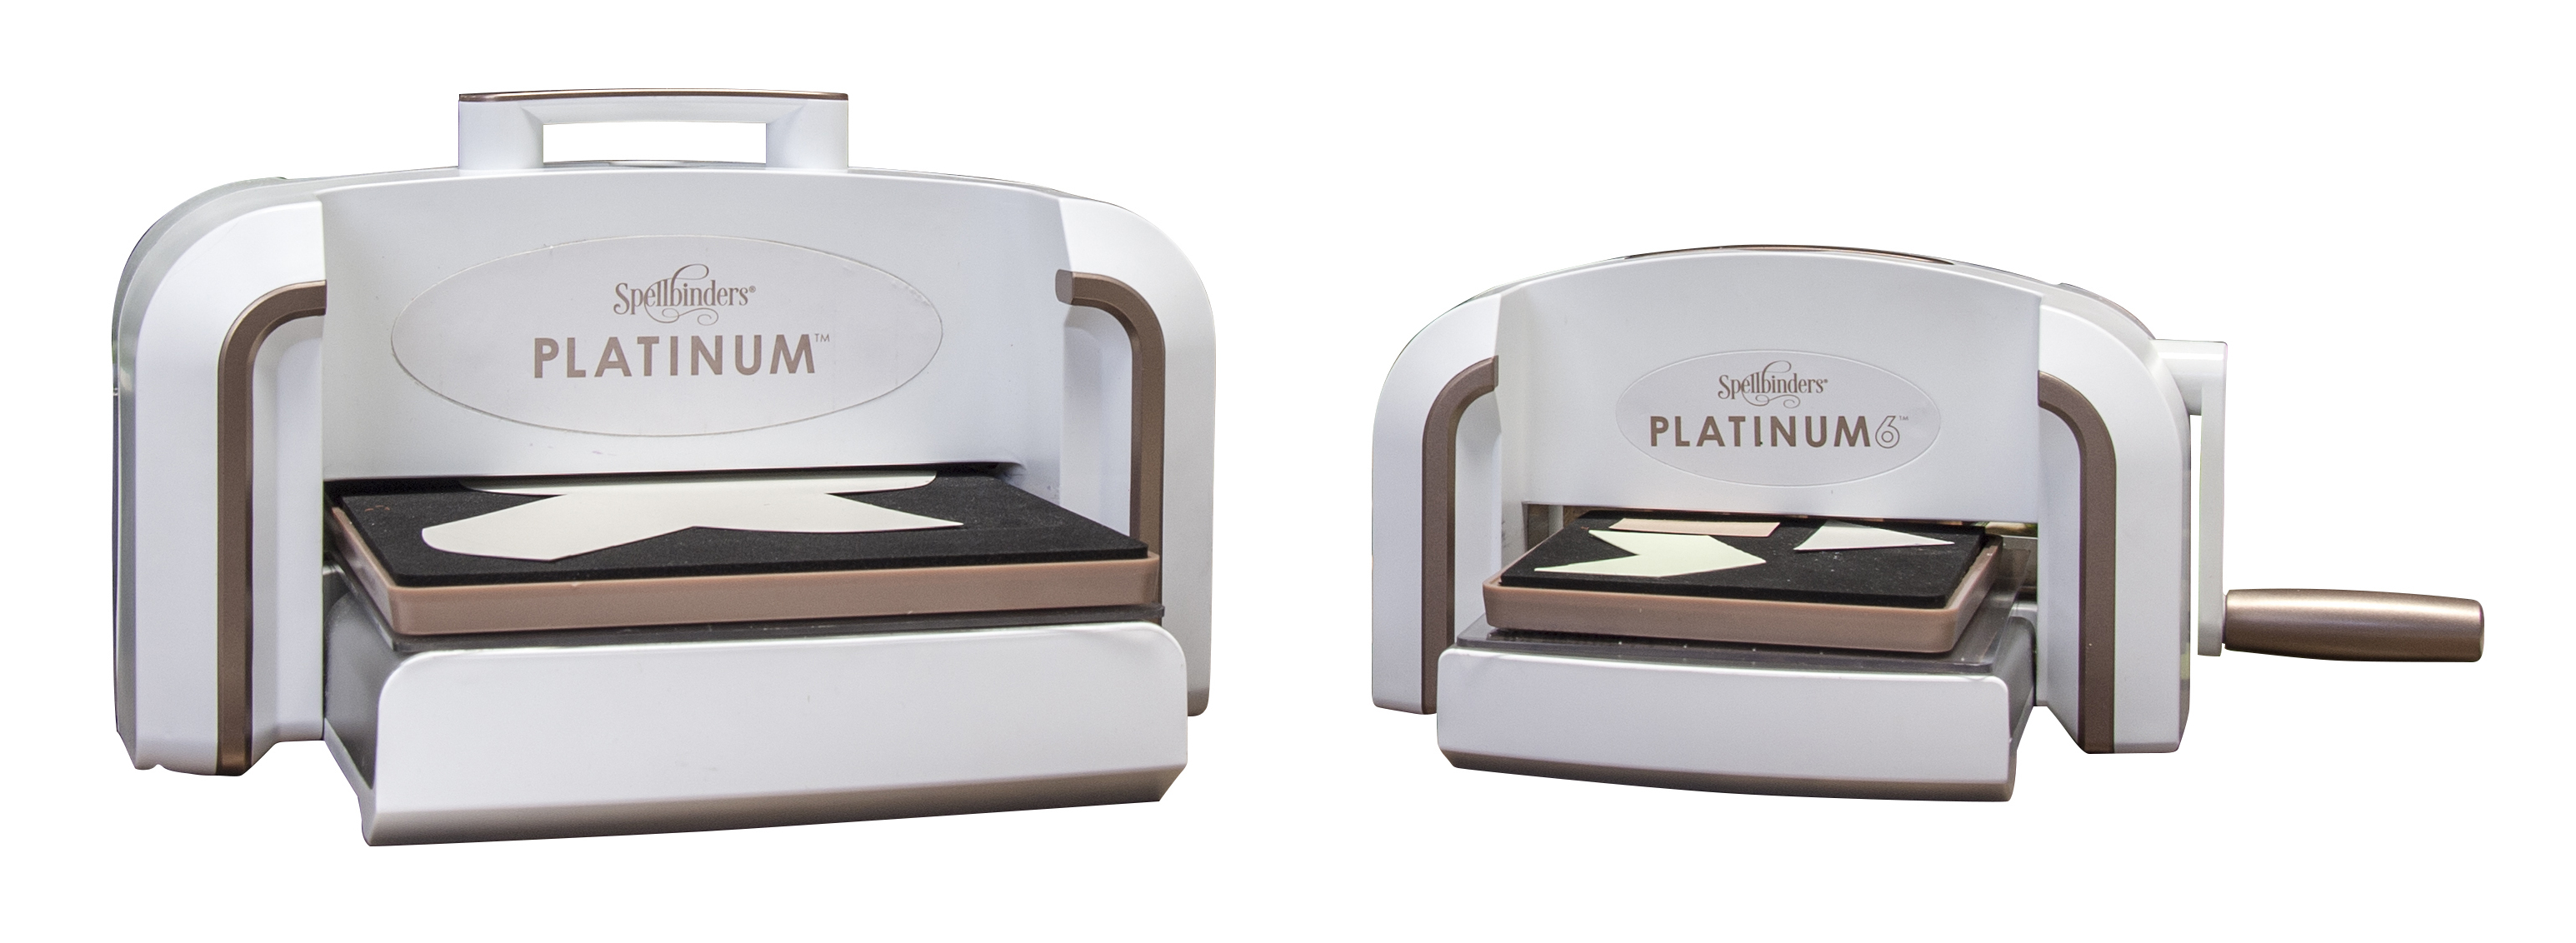  Spellbinders Platinum 8.5 Inch Platform Cutting Machine + Die,  White